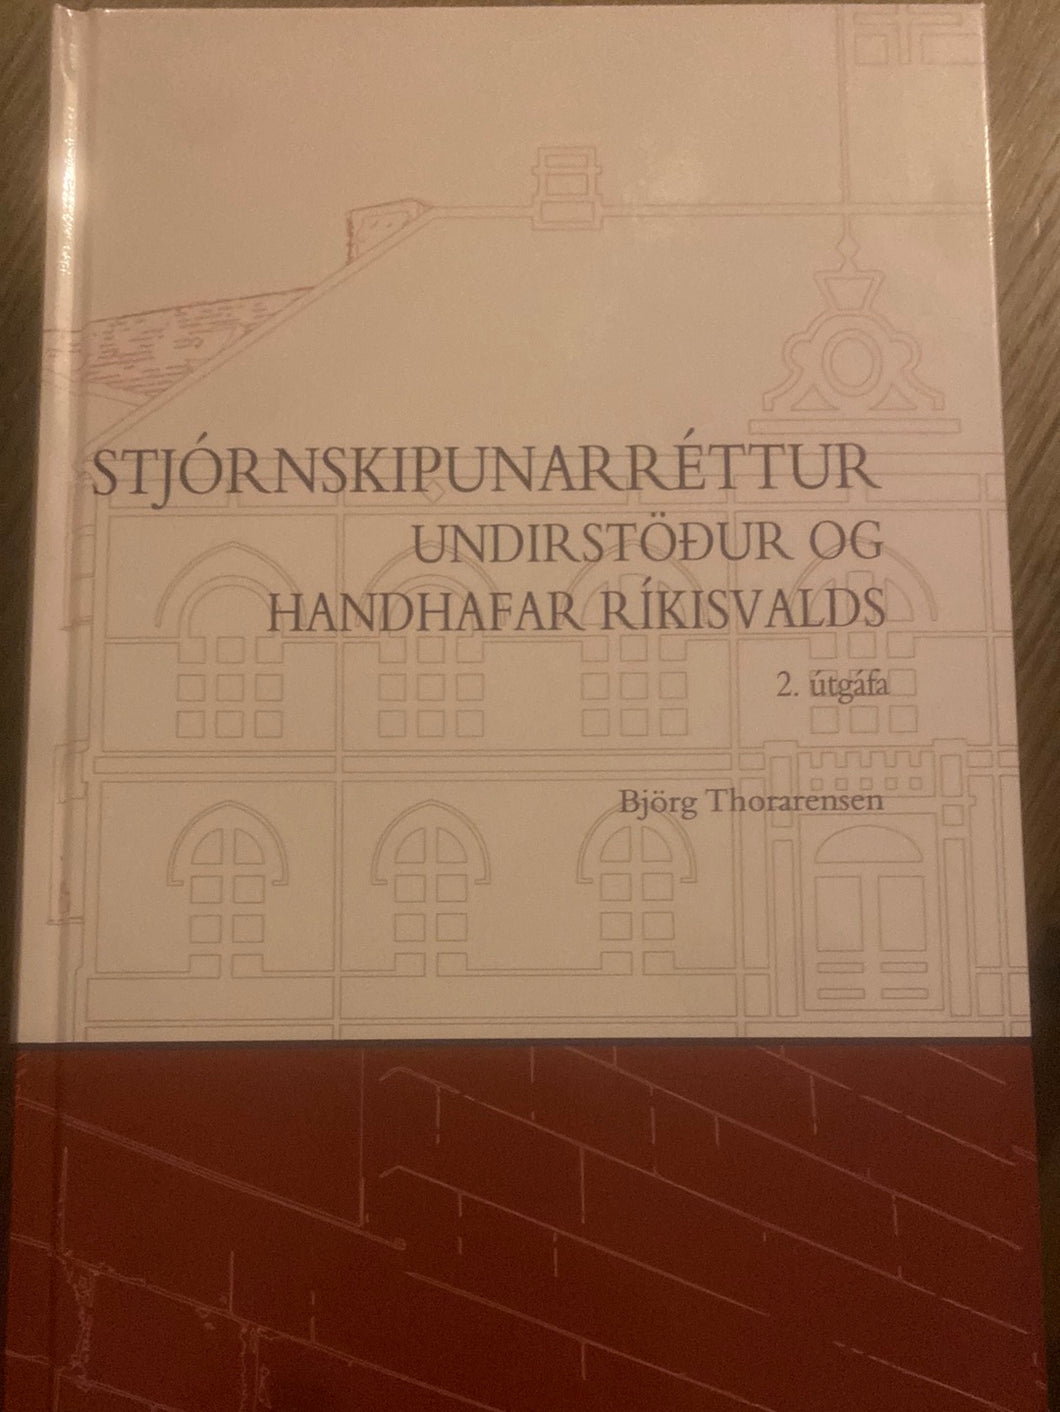 Stjórnskipunarréttur - Undirstöður og handhafar ríkisvalds